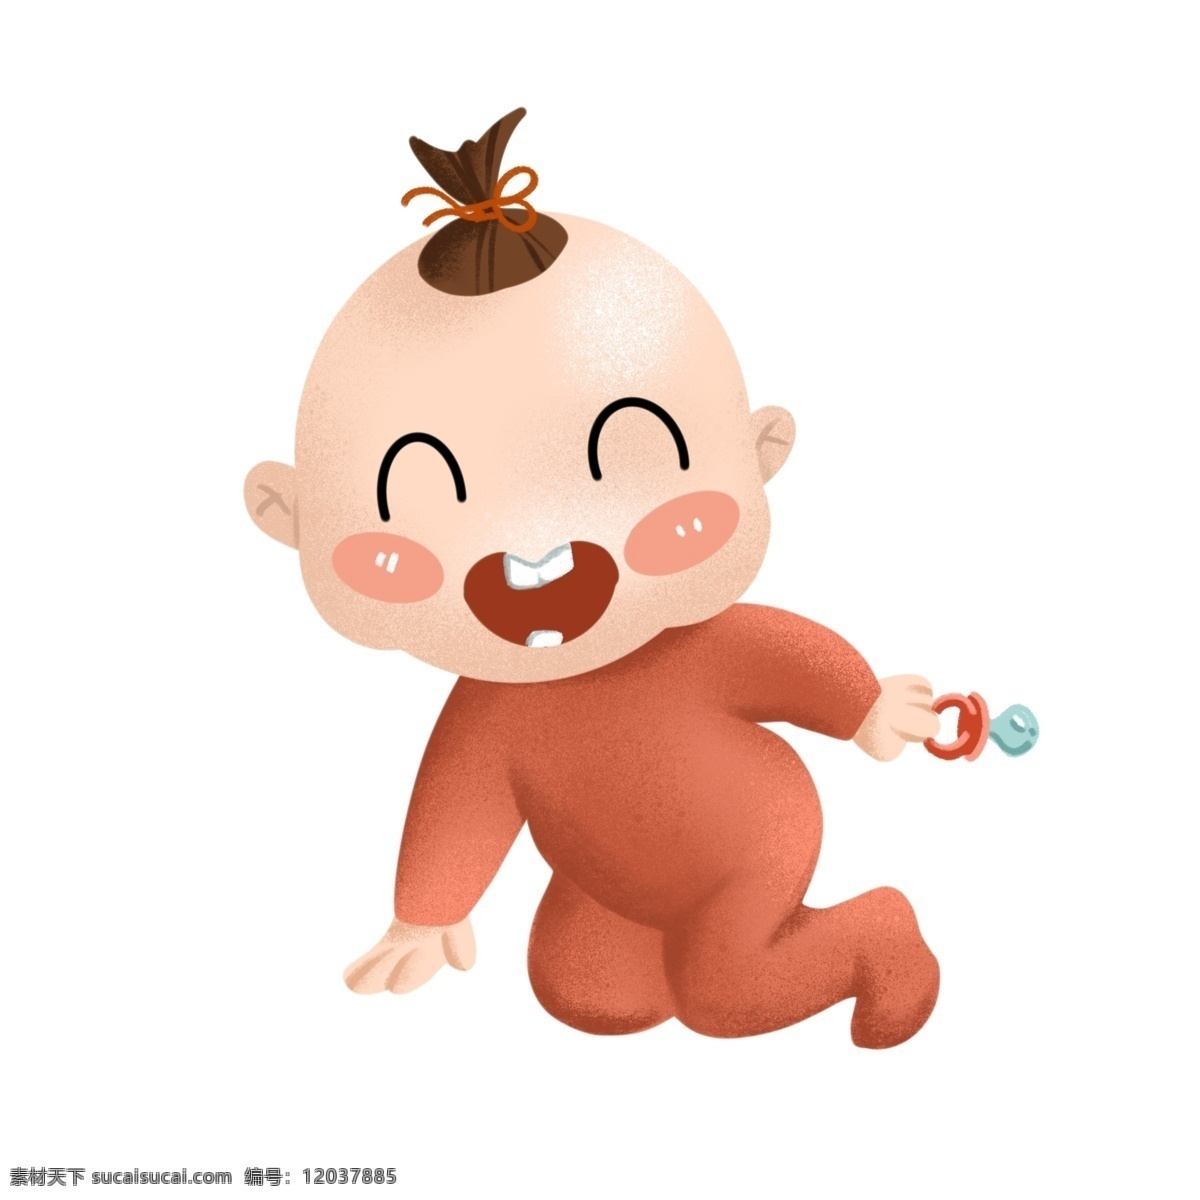 开心 婴儿 装饰 插画 开心的婴儿 漂亮的婴儿 红色的糖果 婴儿装饰 爬行的婴儿 微笑的婴儿 卡通人物